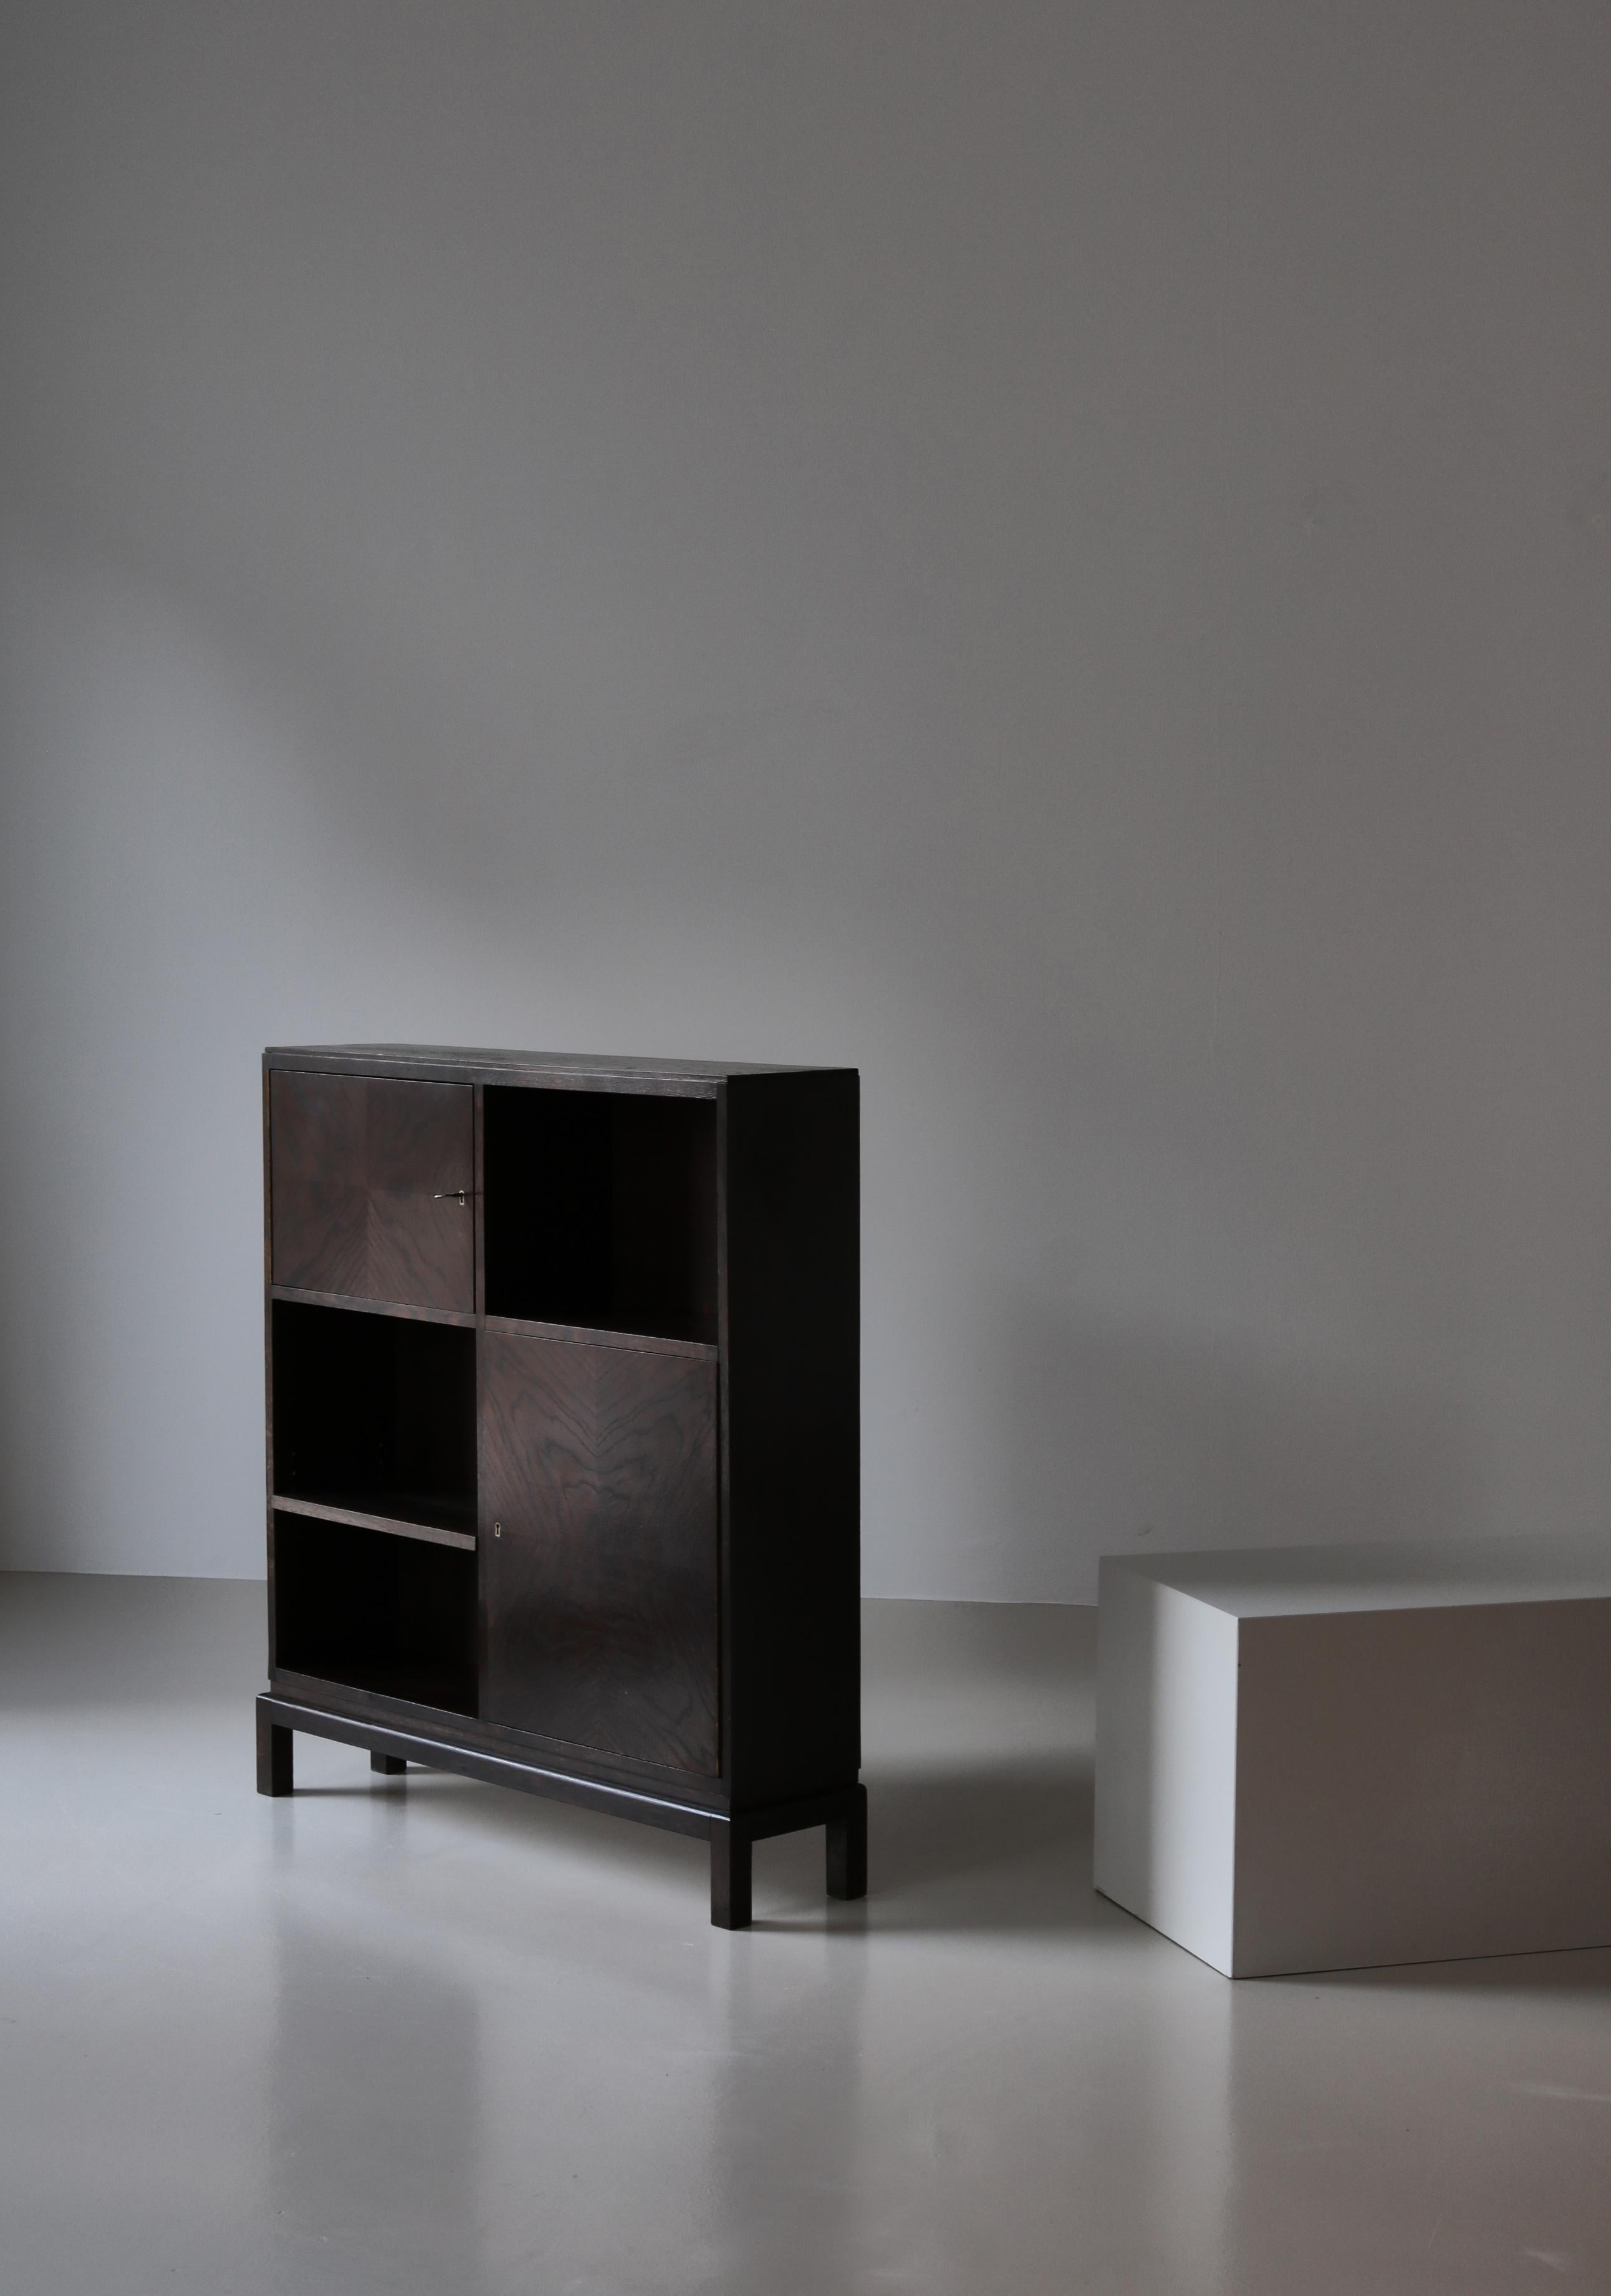 Charmante armoire fabriquée au Danemark en 1930 par un ébéniste inconnu. L'extérieur des armoires est en chêne patiné foncé et l'intérieur en bois de pin chaud. Le style est typique de l'adaptation danoise du style fonctionnaliste Bauhaus, qui était